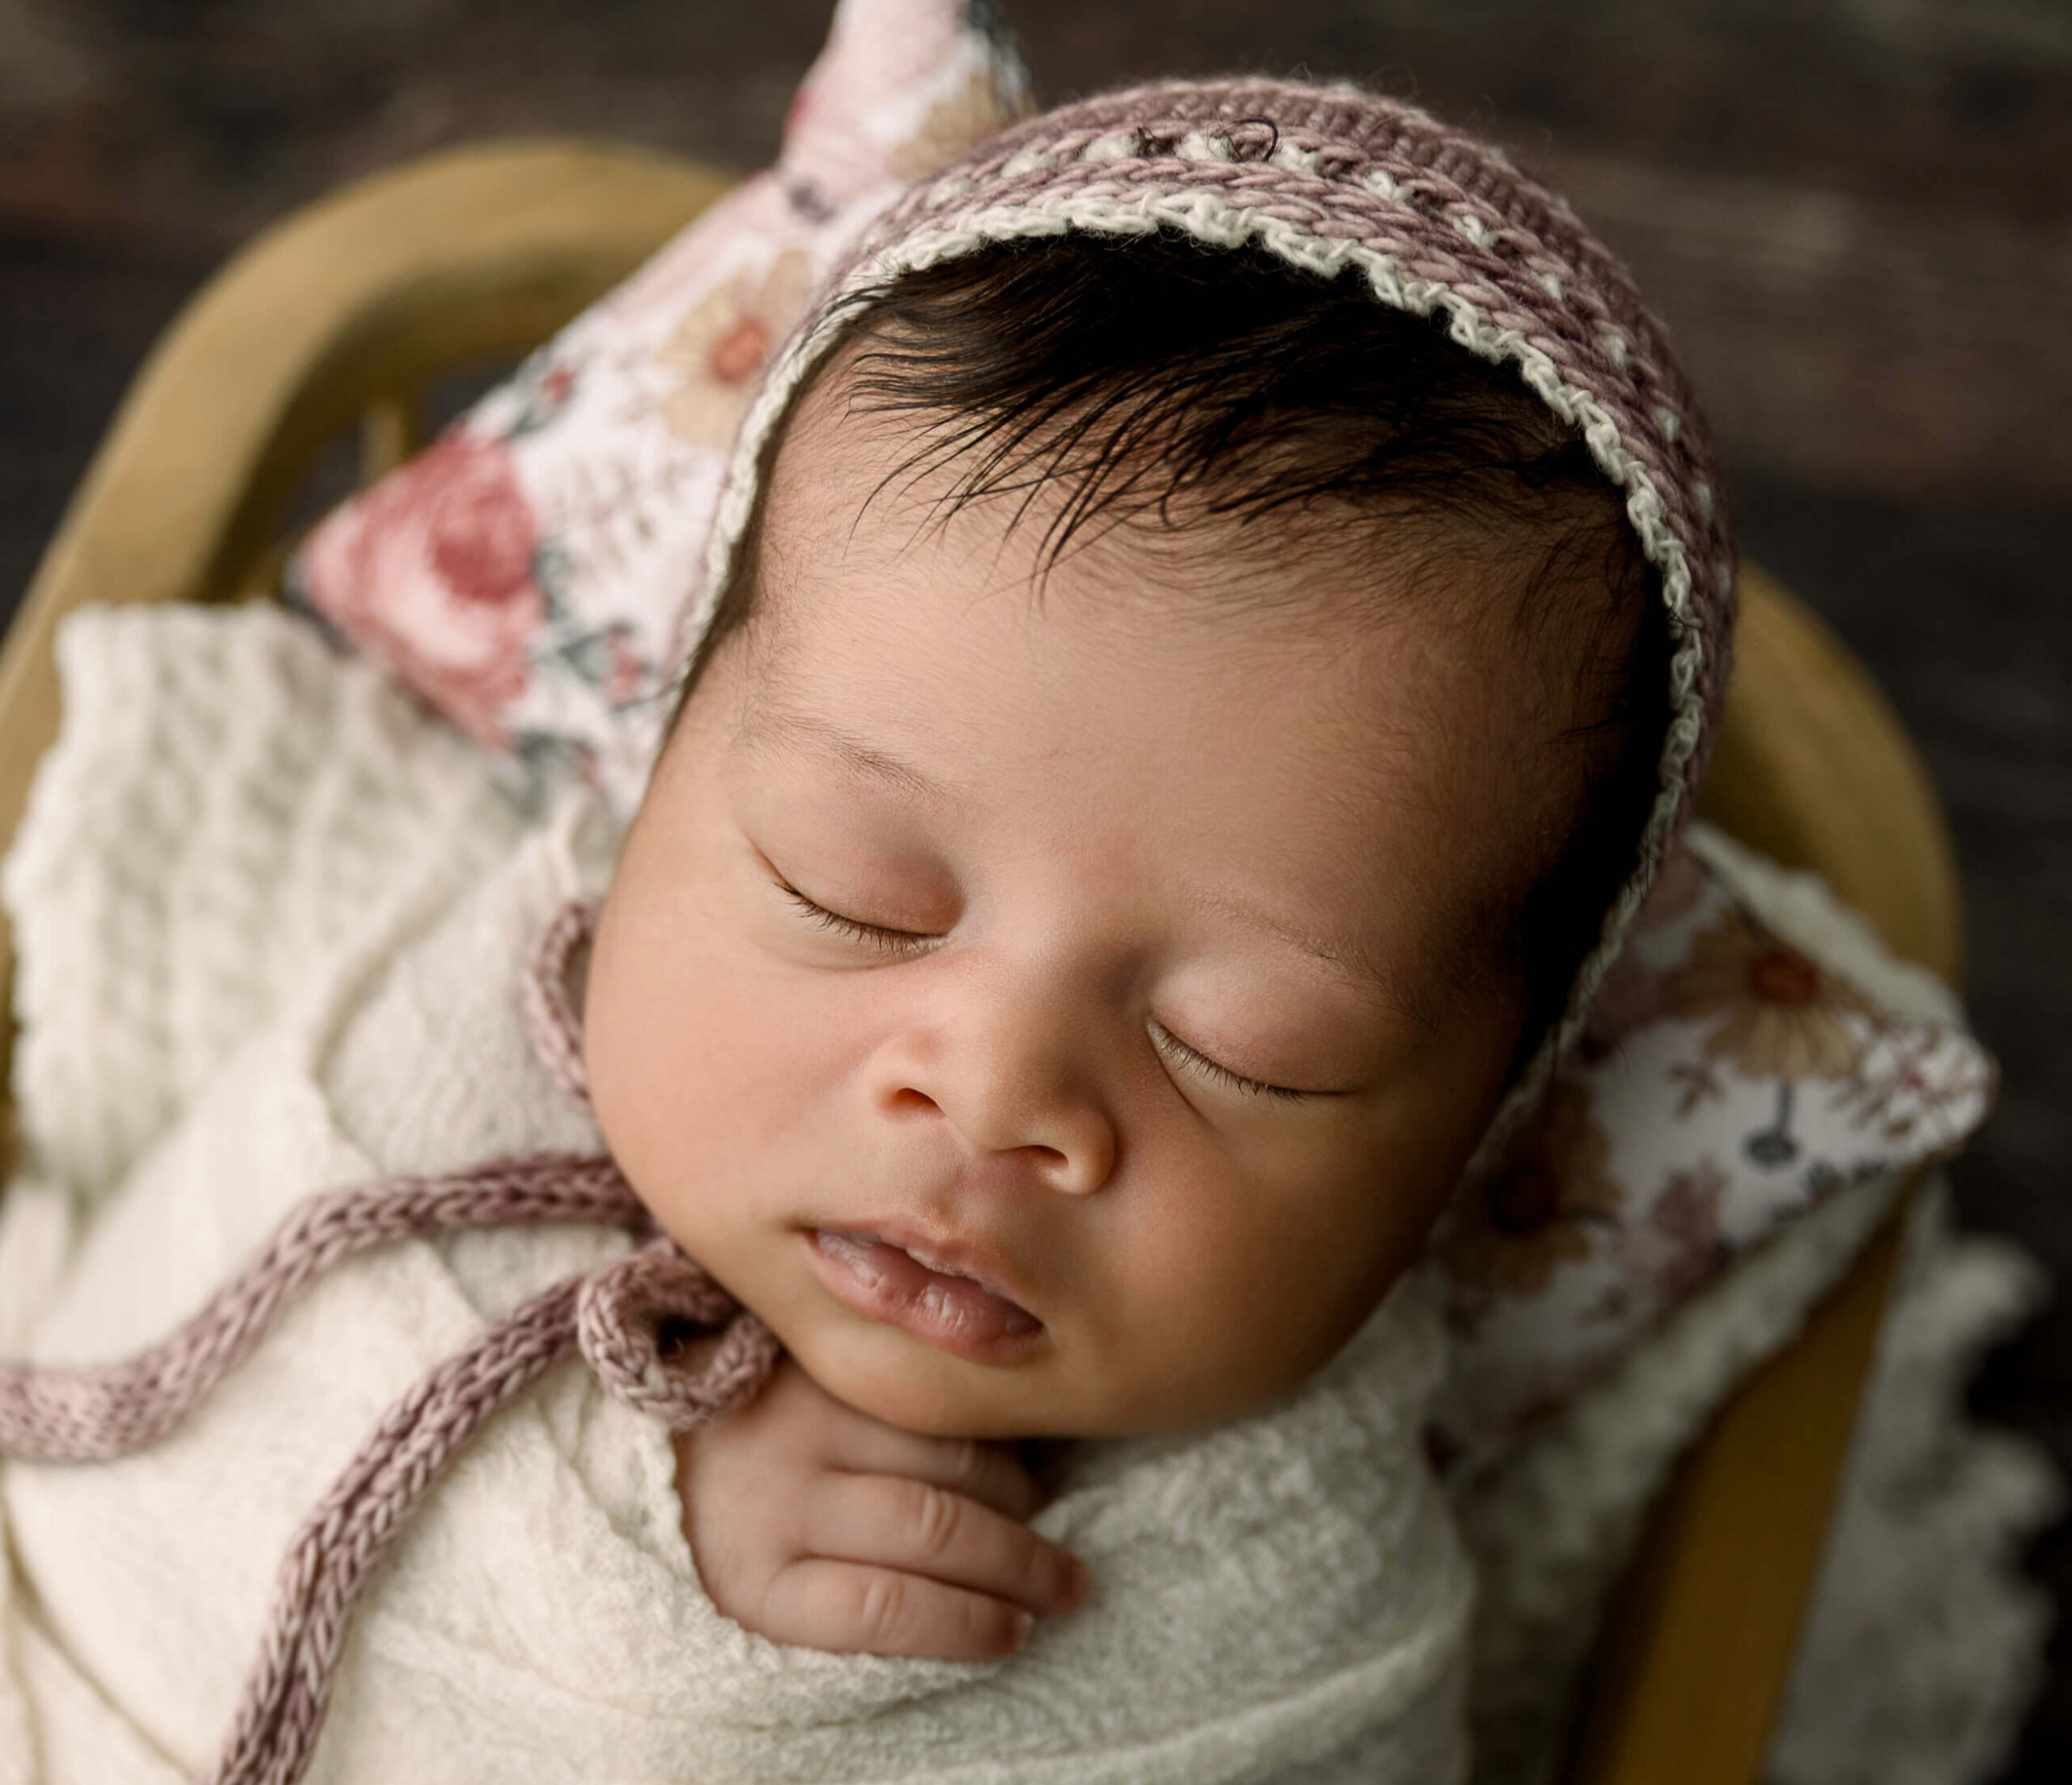 Newborn baby girl wearing a bonnet